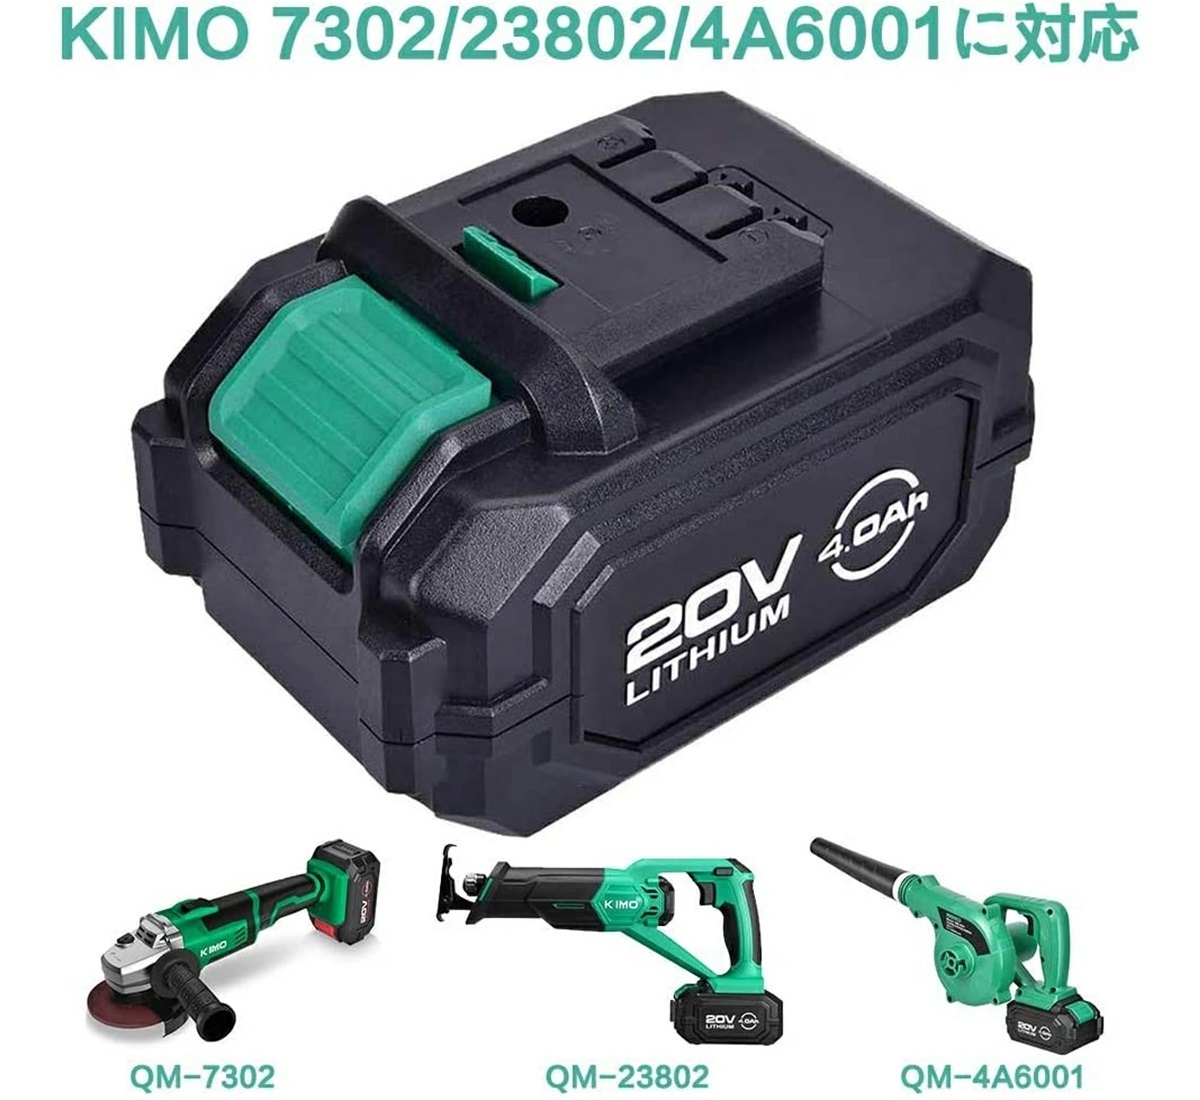 KIMO 20V 4000mAh для замены аккумулятор lithium ион аккумулятор 20V сменный аккумулятор KIMO электроинструмент специальный 23802/4A6001/7302 соответствует PSE засвидетельствование settled 